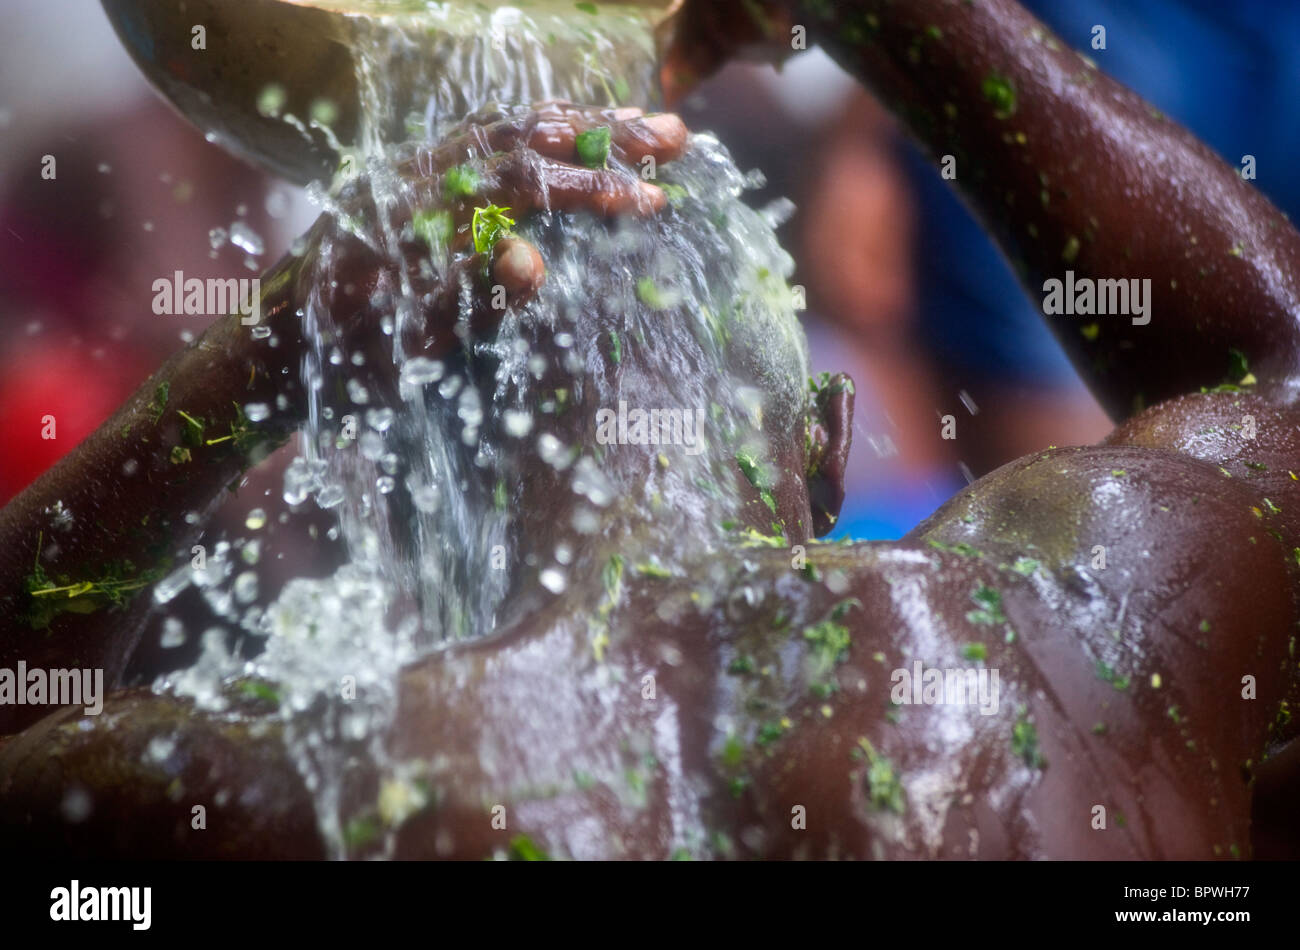 Un praticante voodoo versa acqua sopra la sua testa durante l'annuale Saut D'eau festival Voodoo in Haiti. Foto Stock